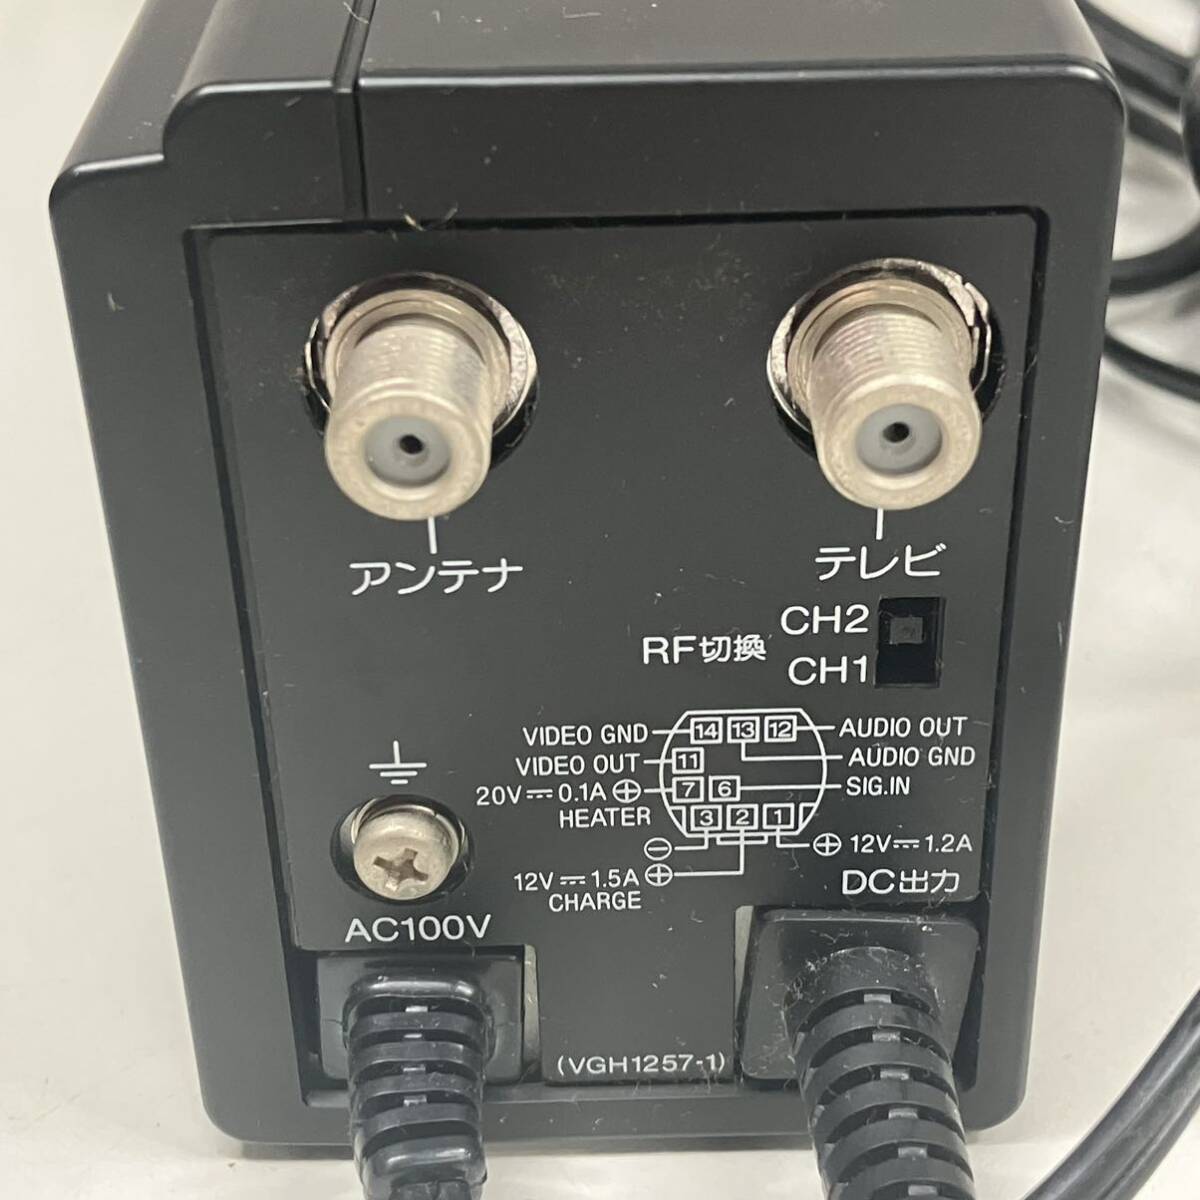 1 иен ~ 3T Panasonic Panasonic National VHS Movie специальный адаптор VW-AM2 VIDEO AC ADAPTOR работоспособность не проверялась серийный номер A712158YD